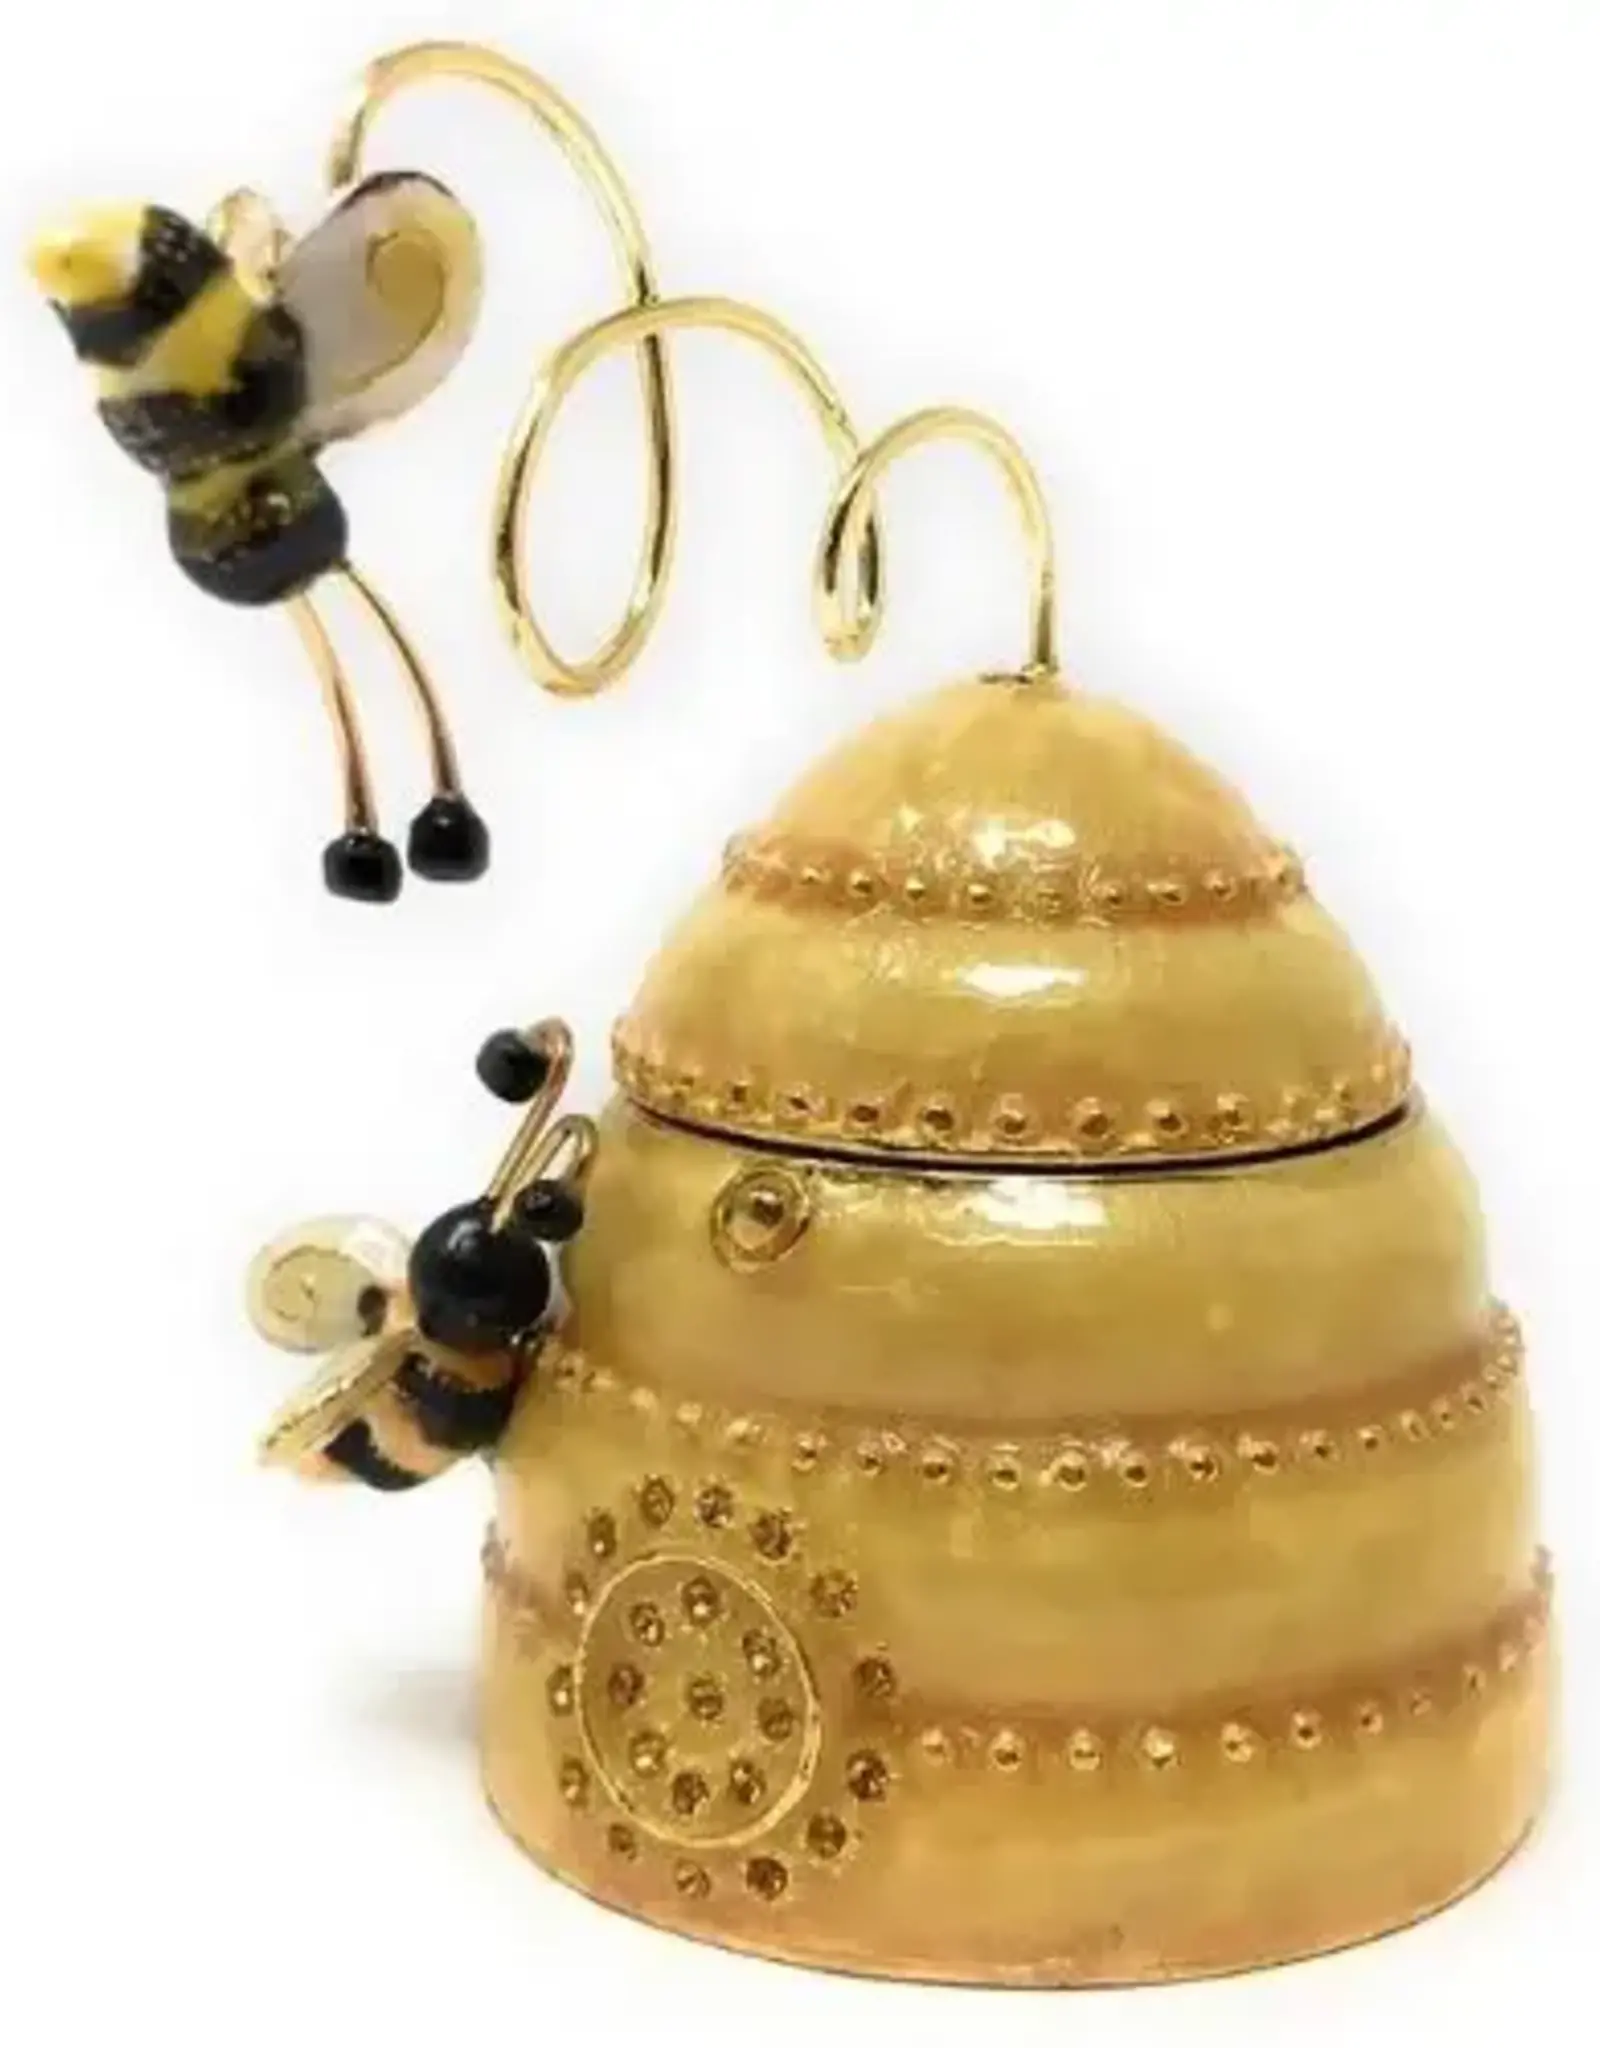 Trinket Box - Bee Hive